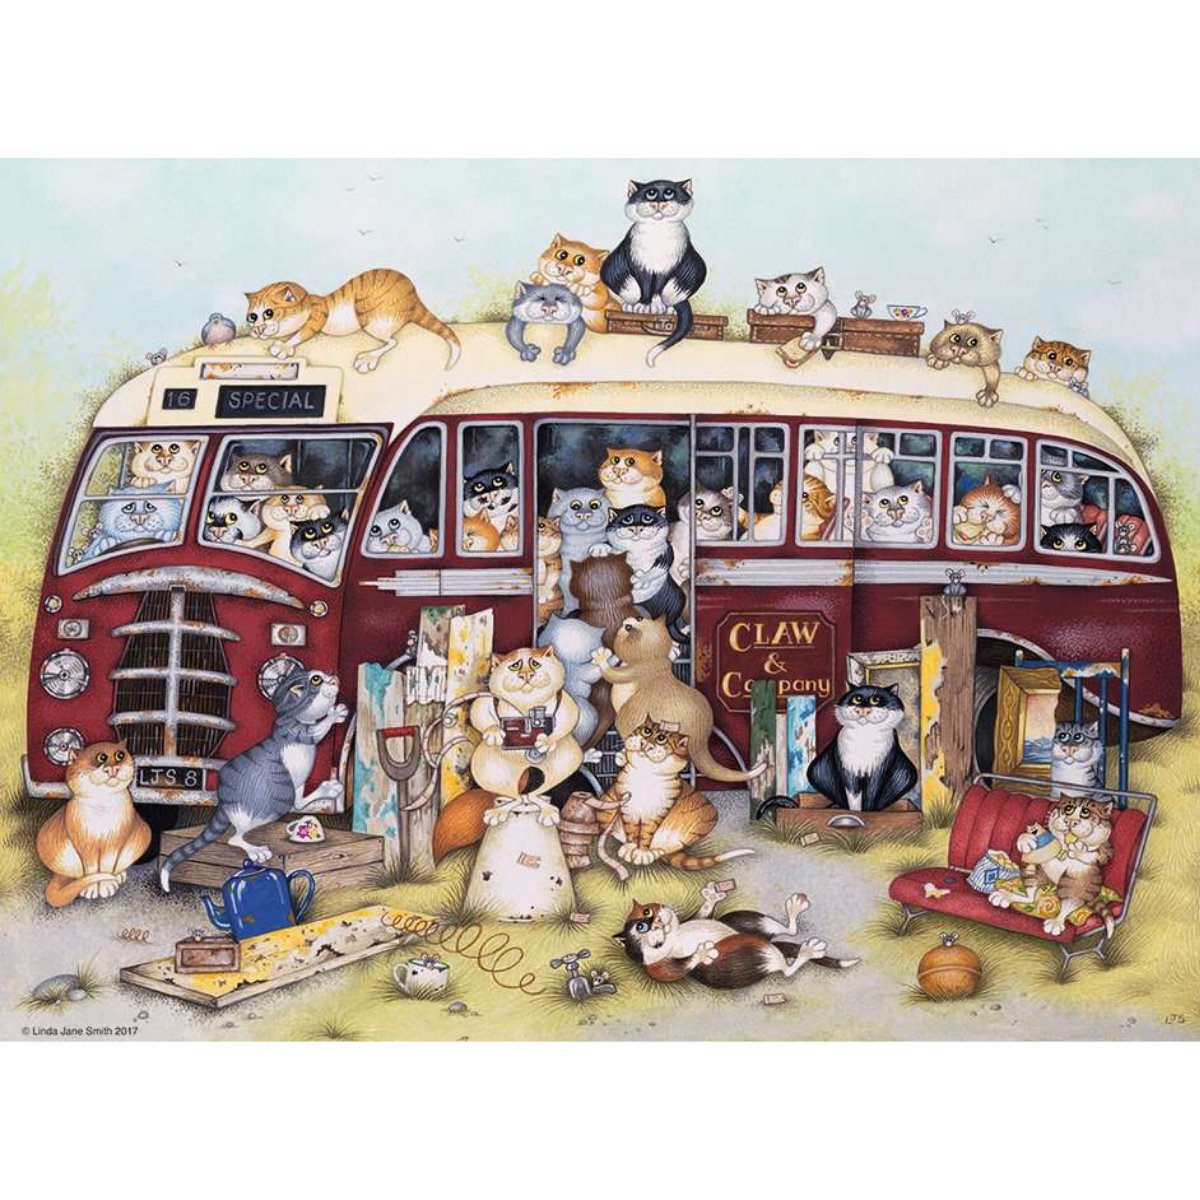 Ravensburger Crazy Cats Vintage Bus 500 Piece Jigsaw Puzzle - Phillips Hobbies